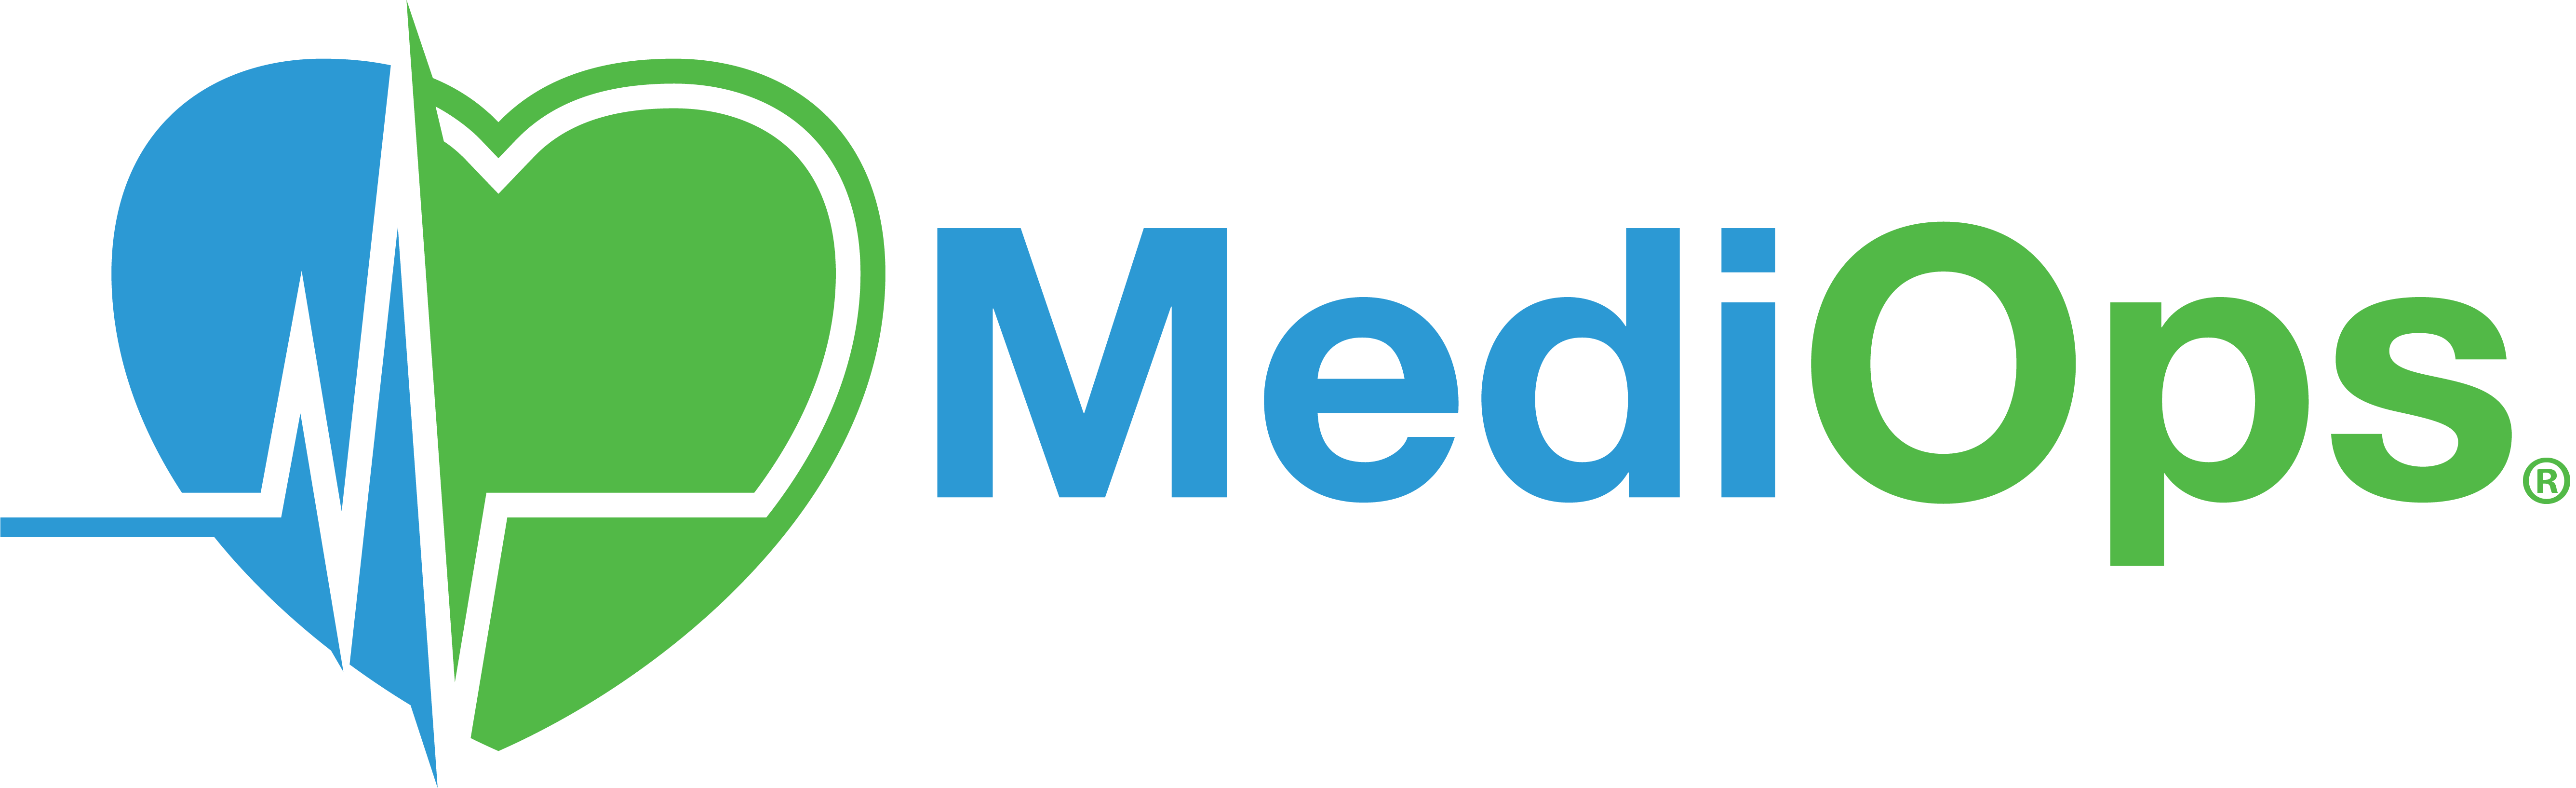 Medi-Ops